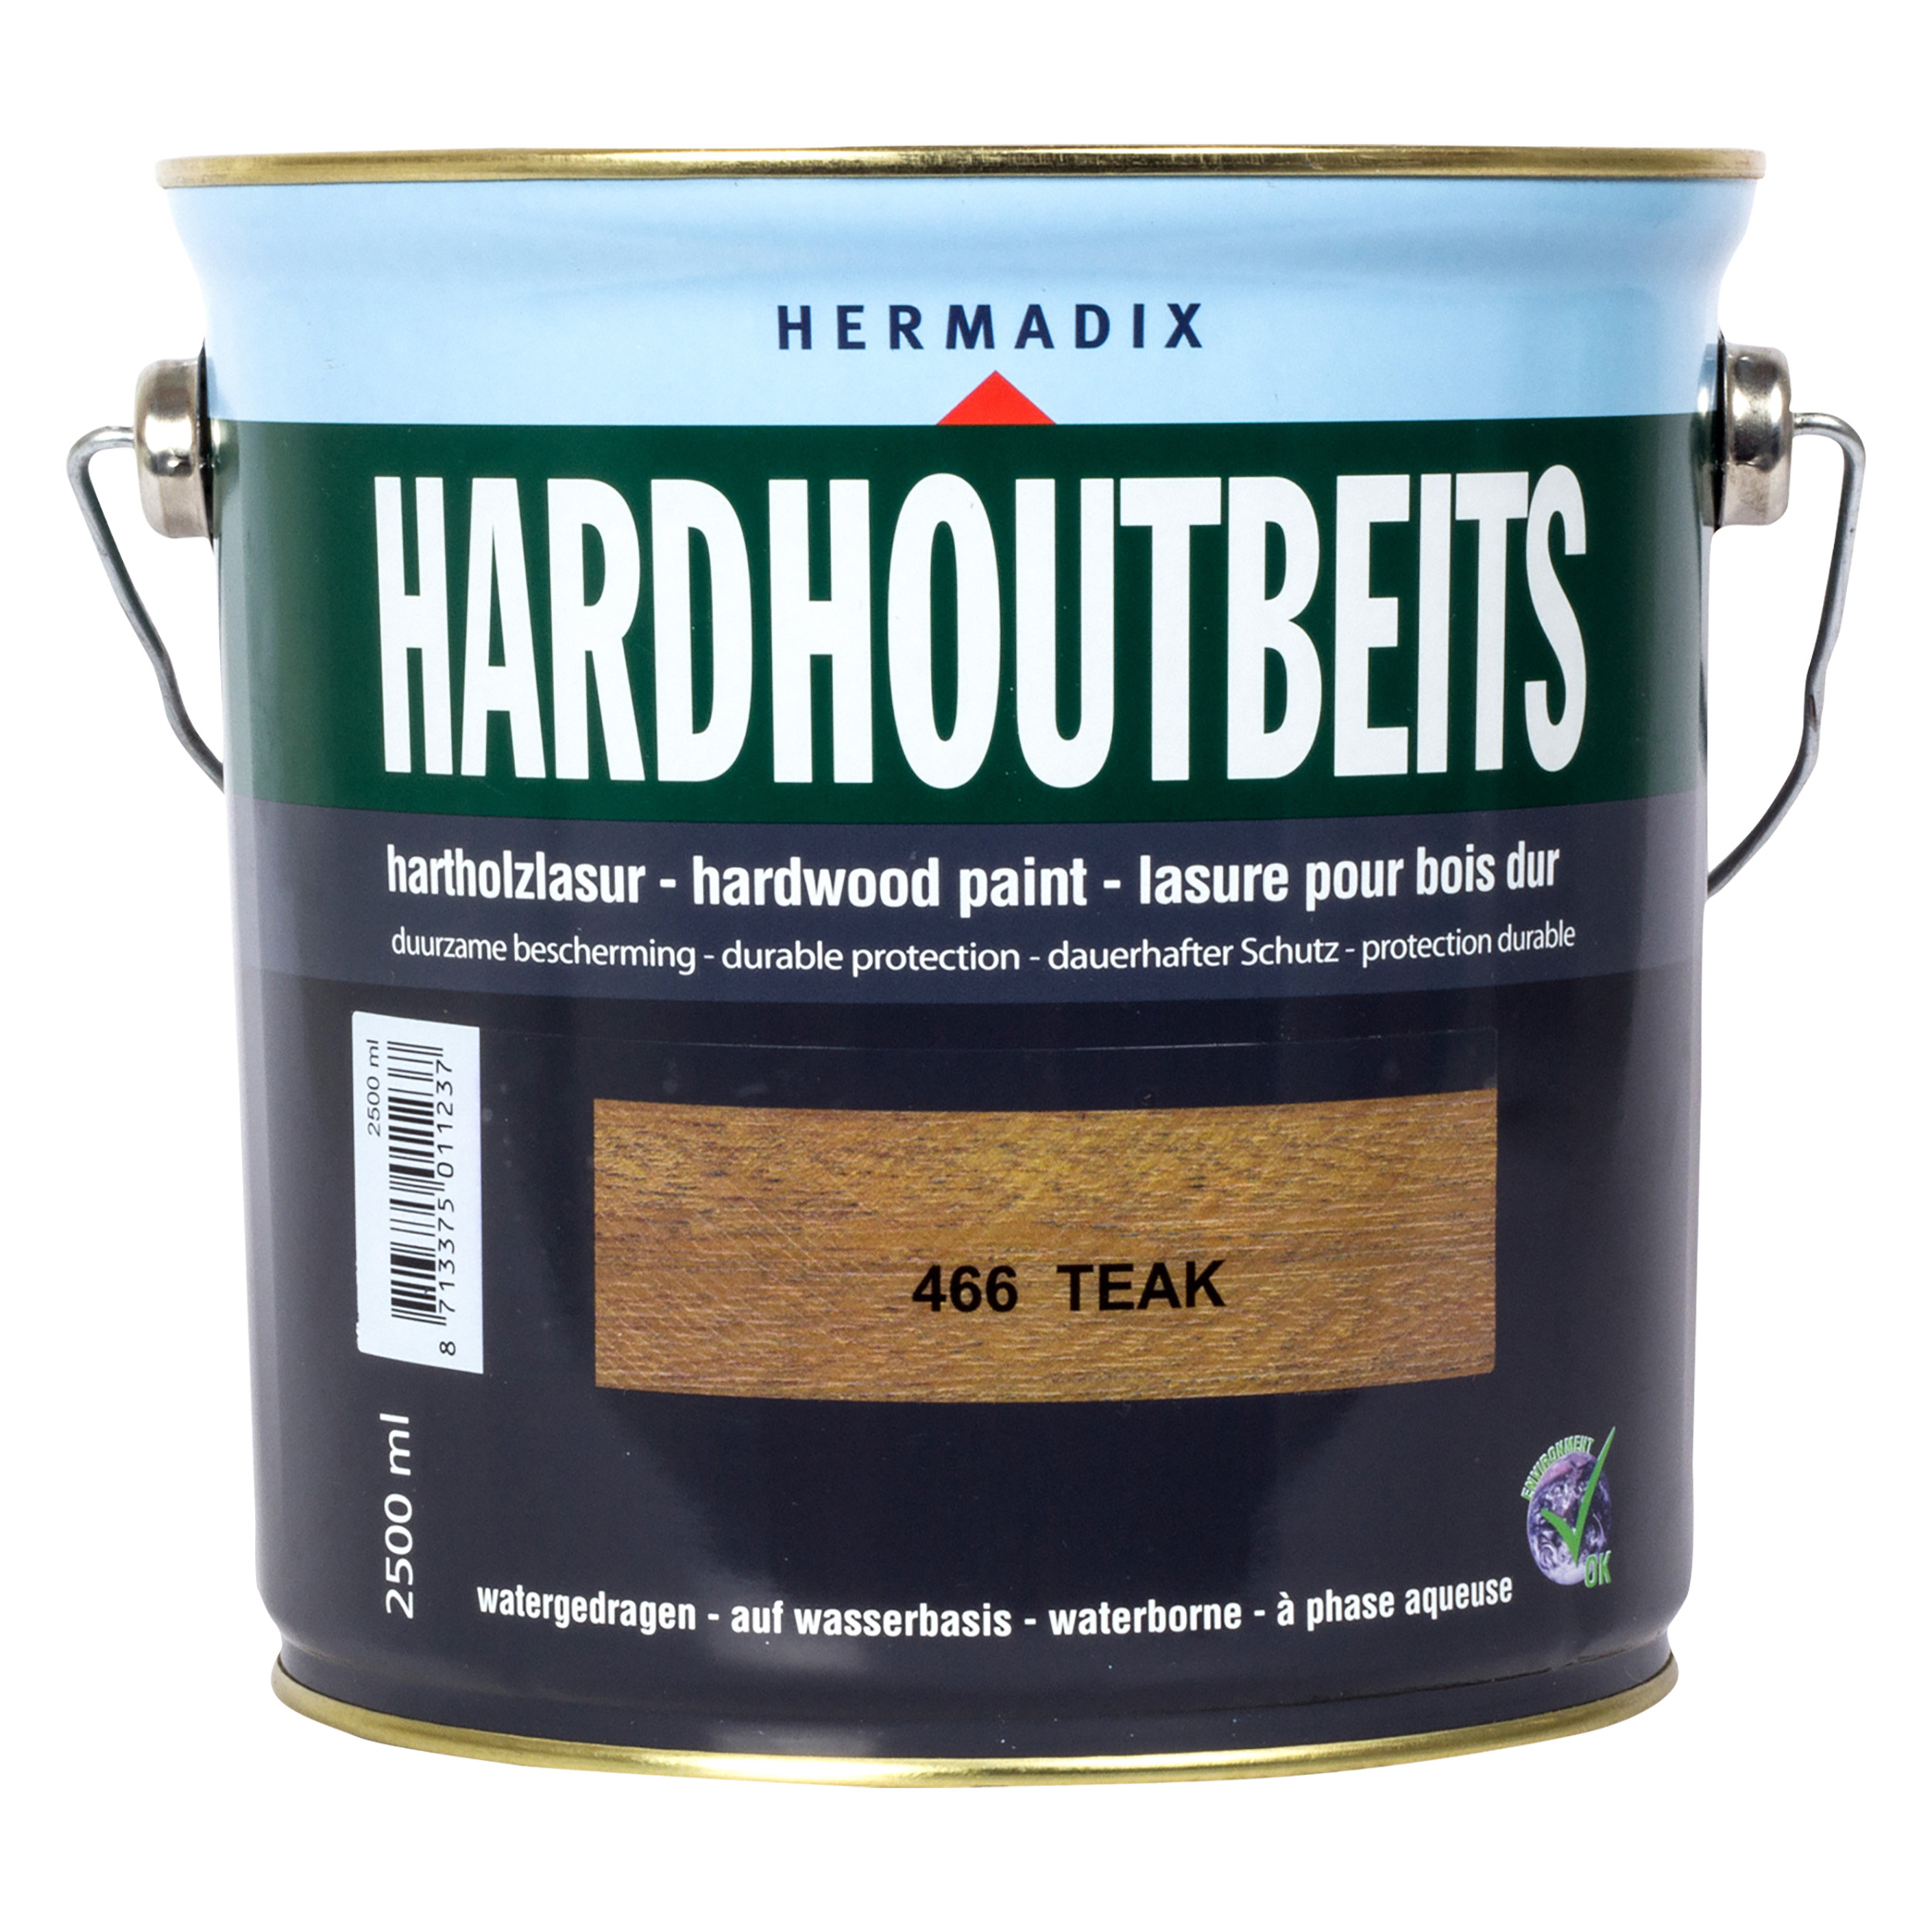 25.846.62 Hermadix  hardhoutbeits zijdeglans - 2500 ml - teak (466)